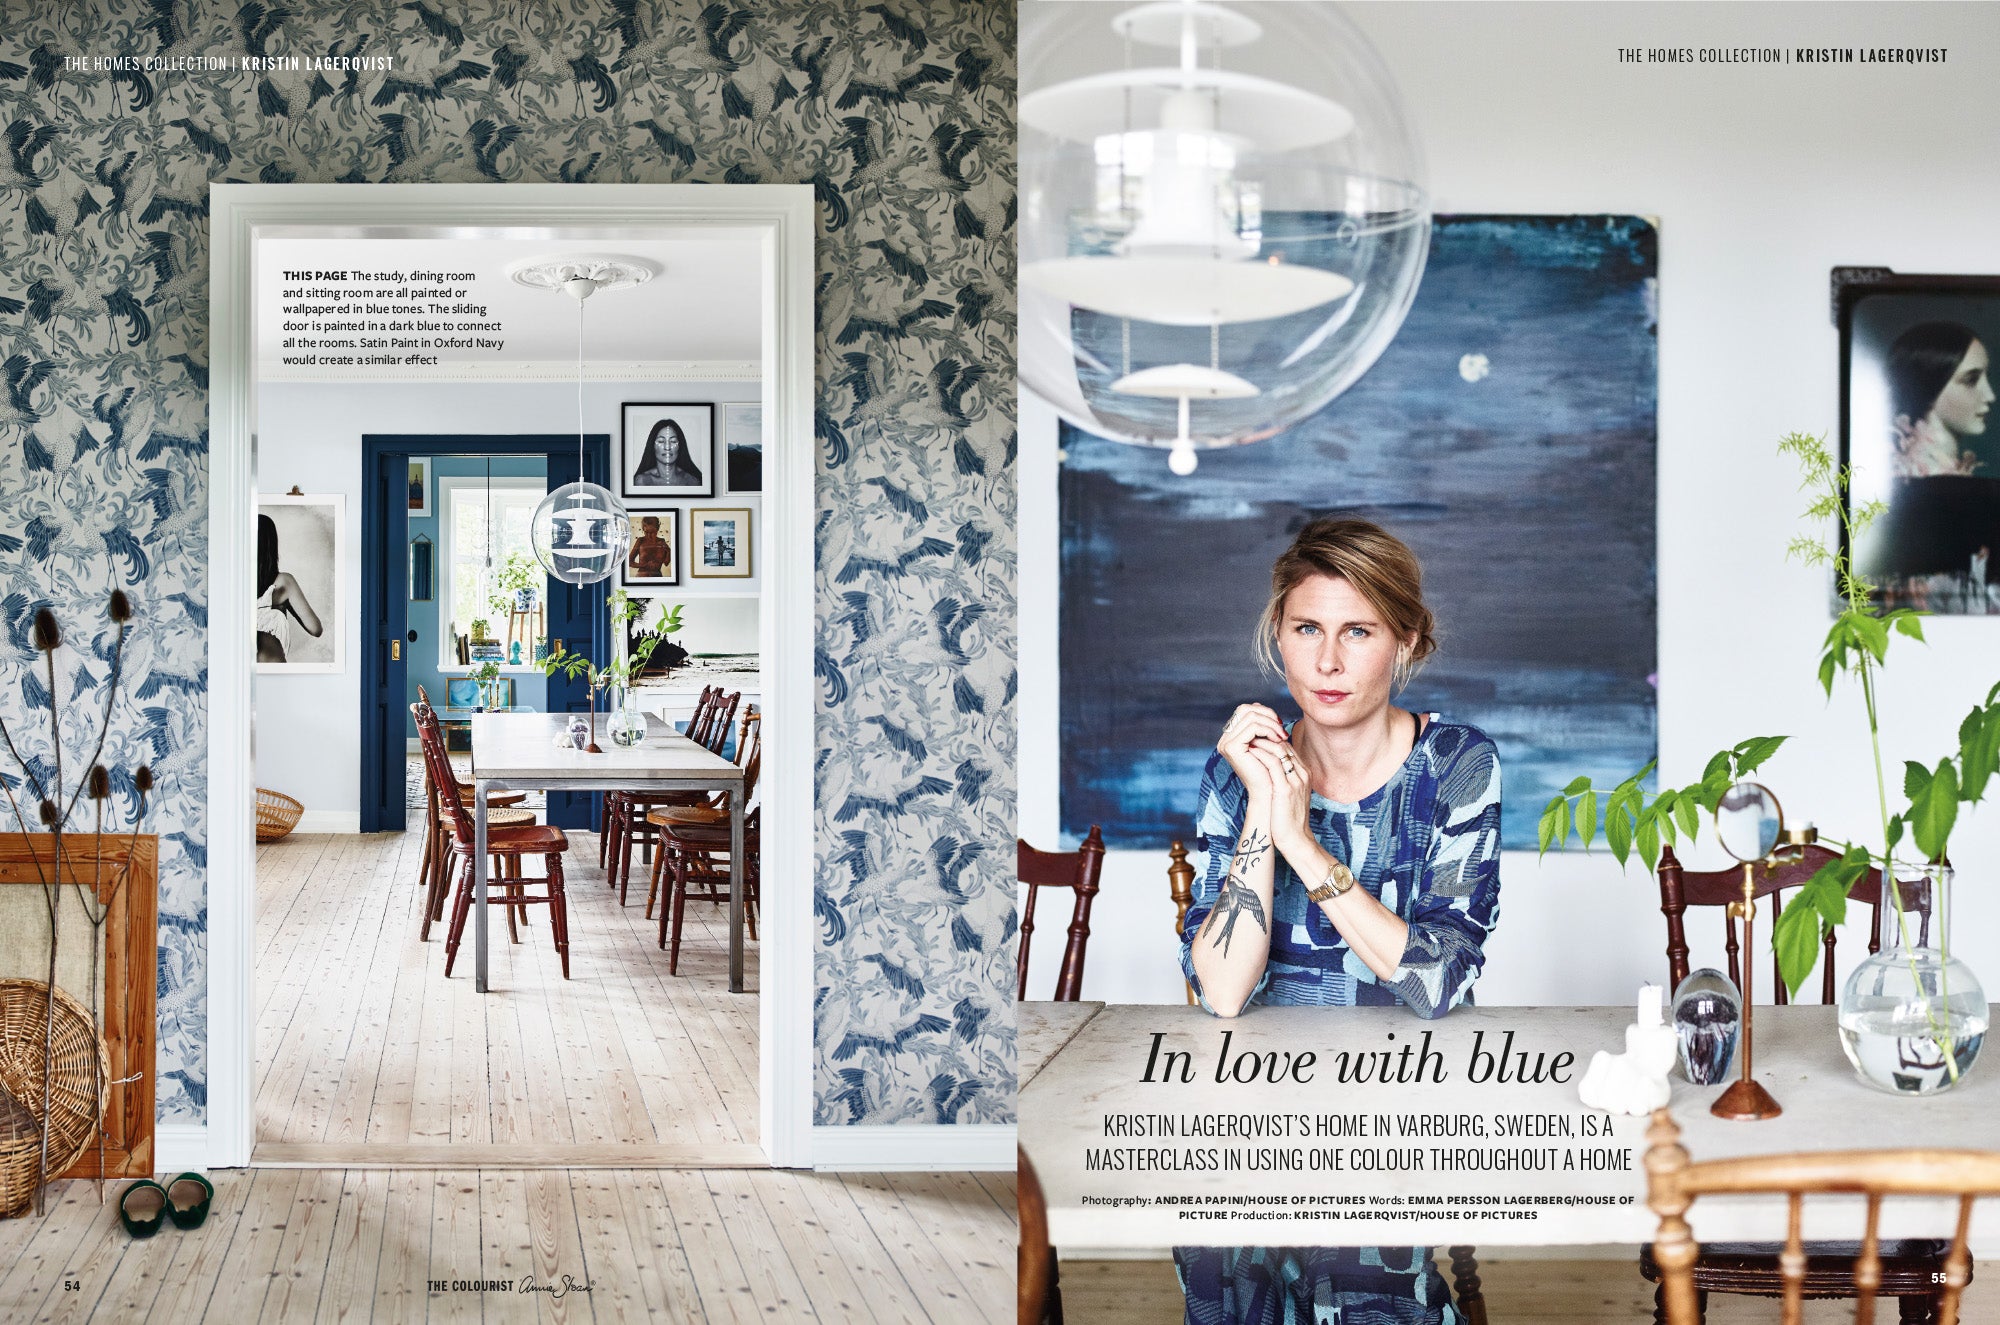 Annie gör hembesök och beerättar om dessa i sitt magasin. Här är hon i Sverige  och träffar Kristin Lagerqvist.